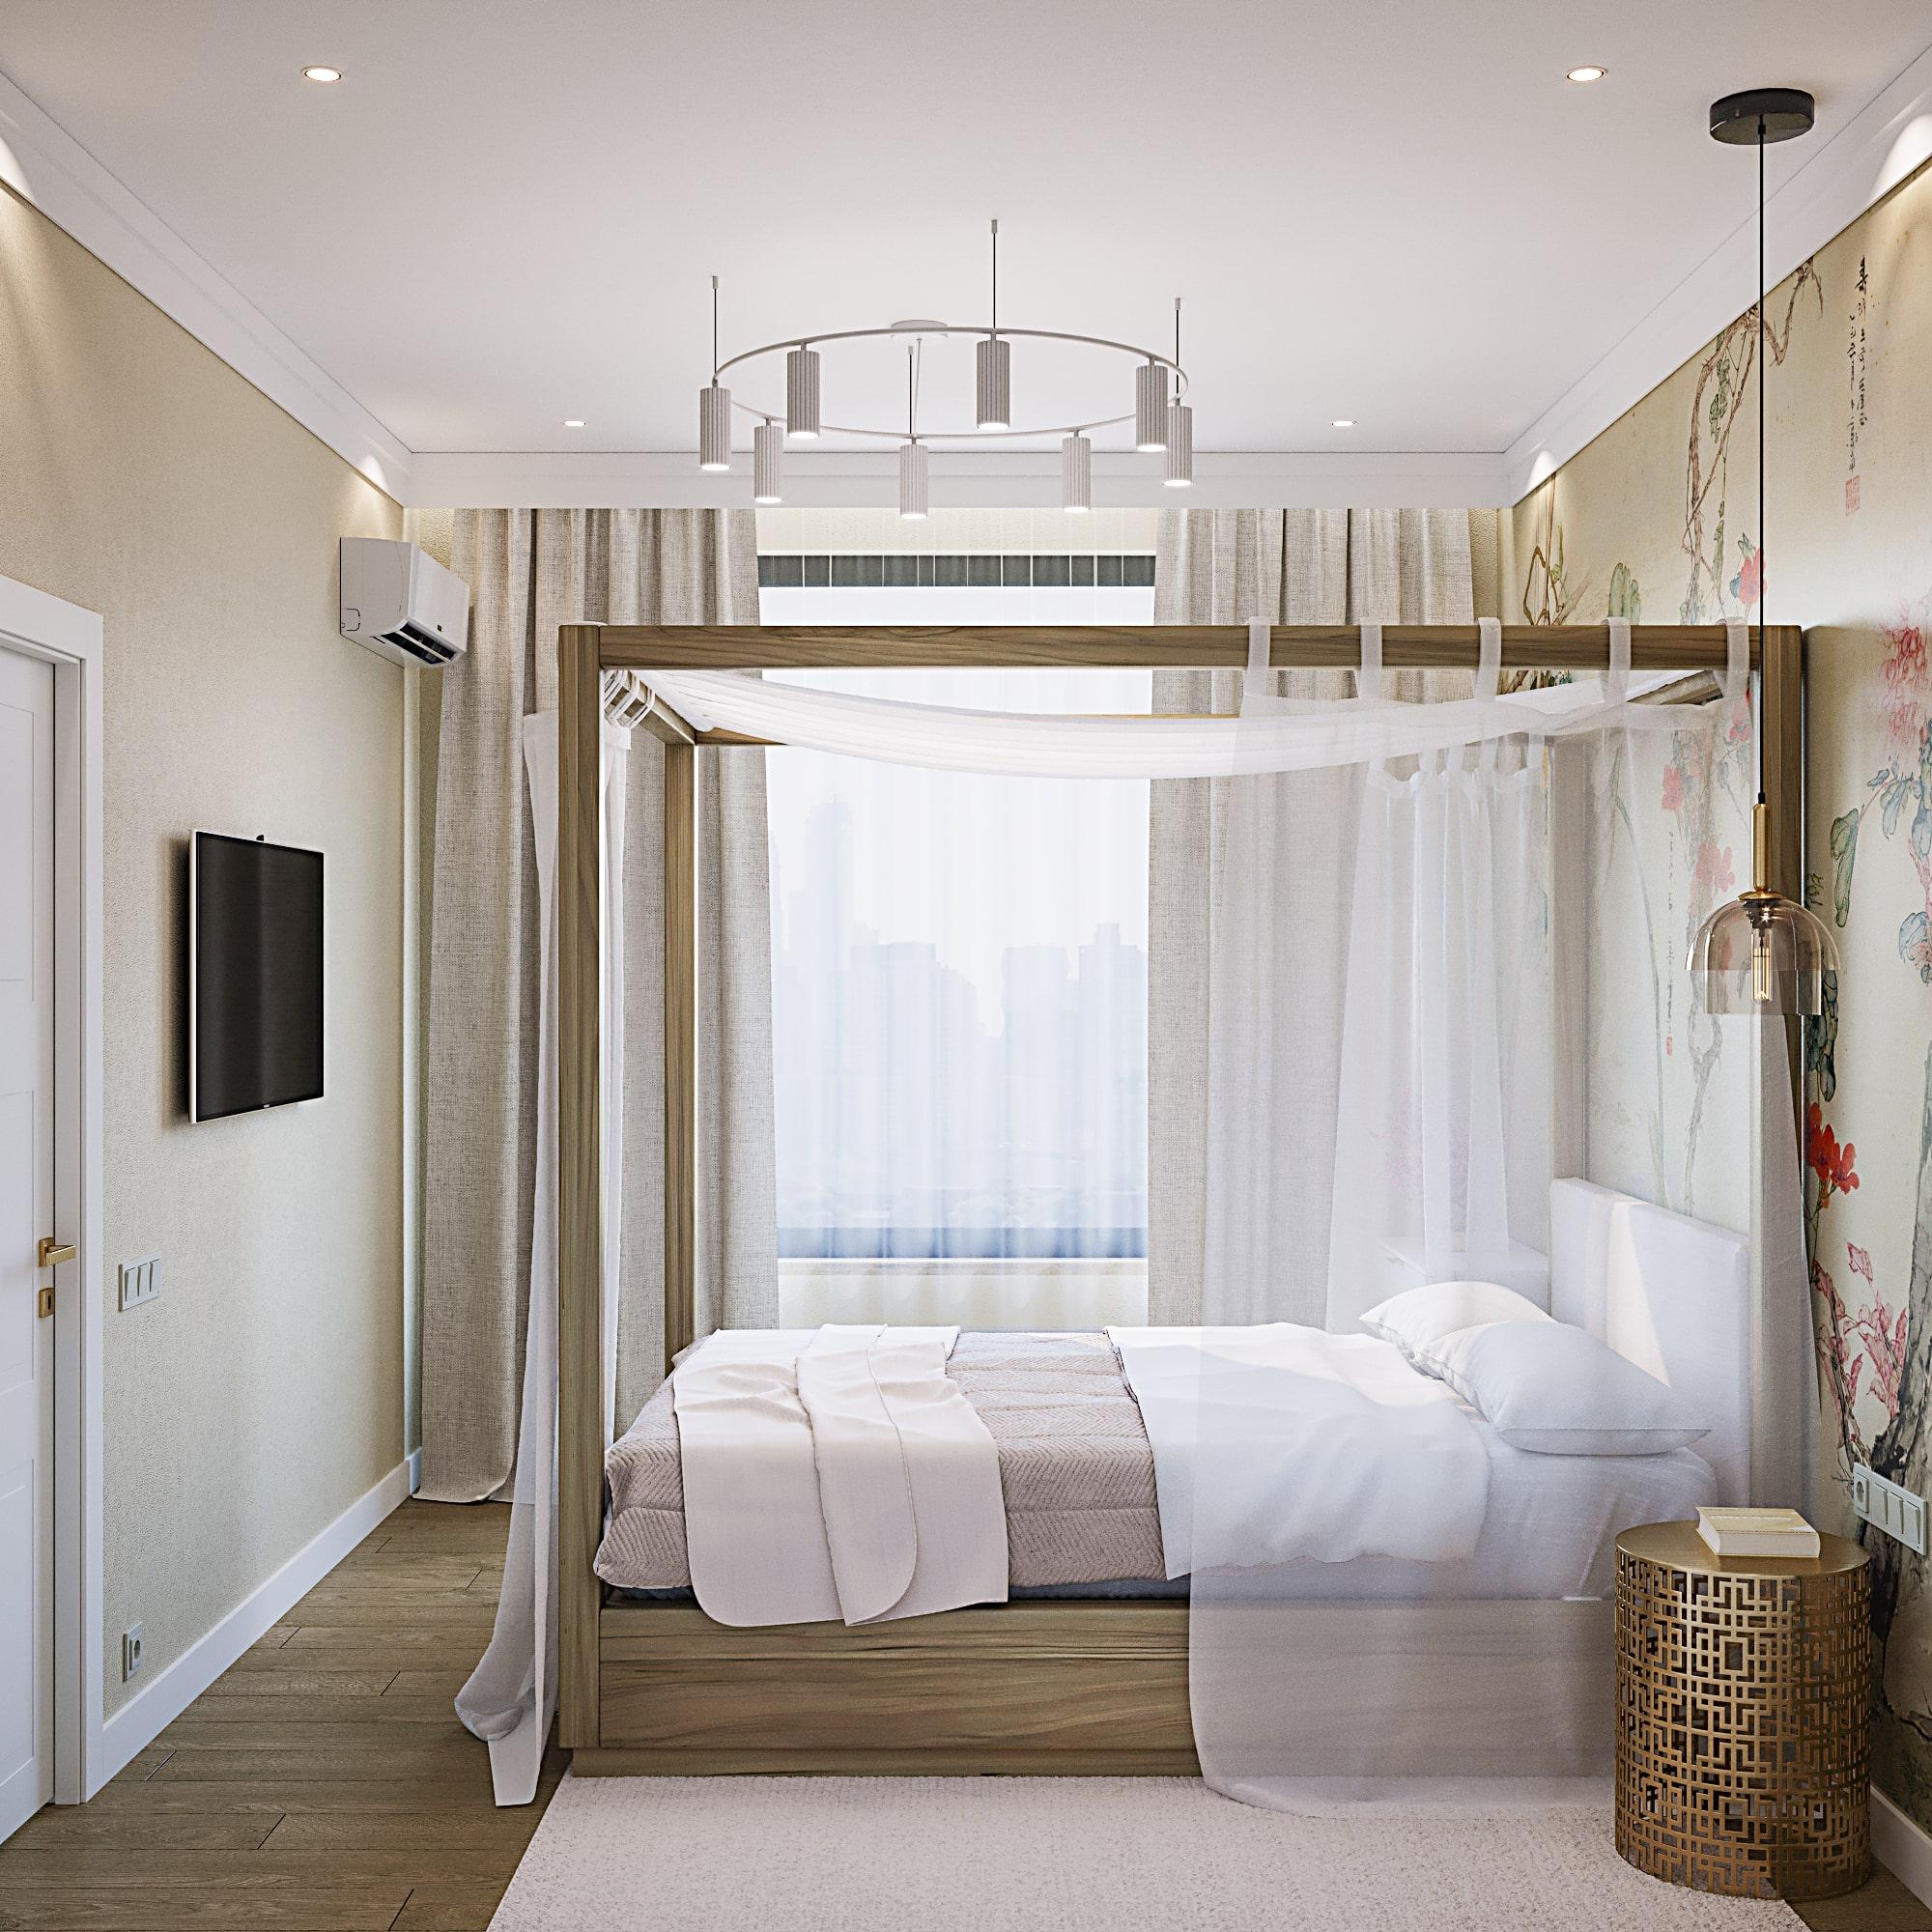 Интерьер с зонированием шторами, кроватью у двери, кроватью под потолком, светильниками над кроватью и шкафом над кроватью